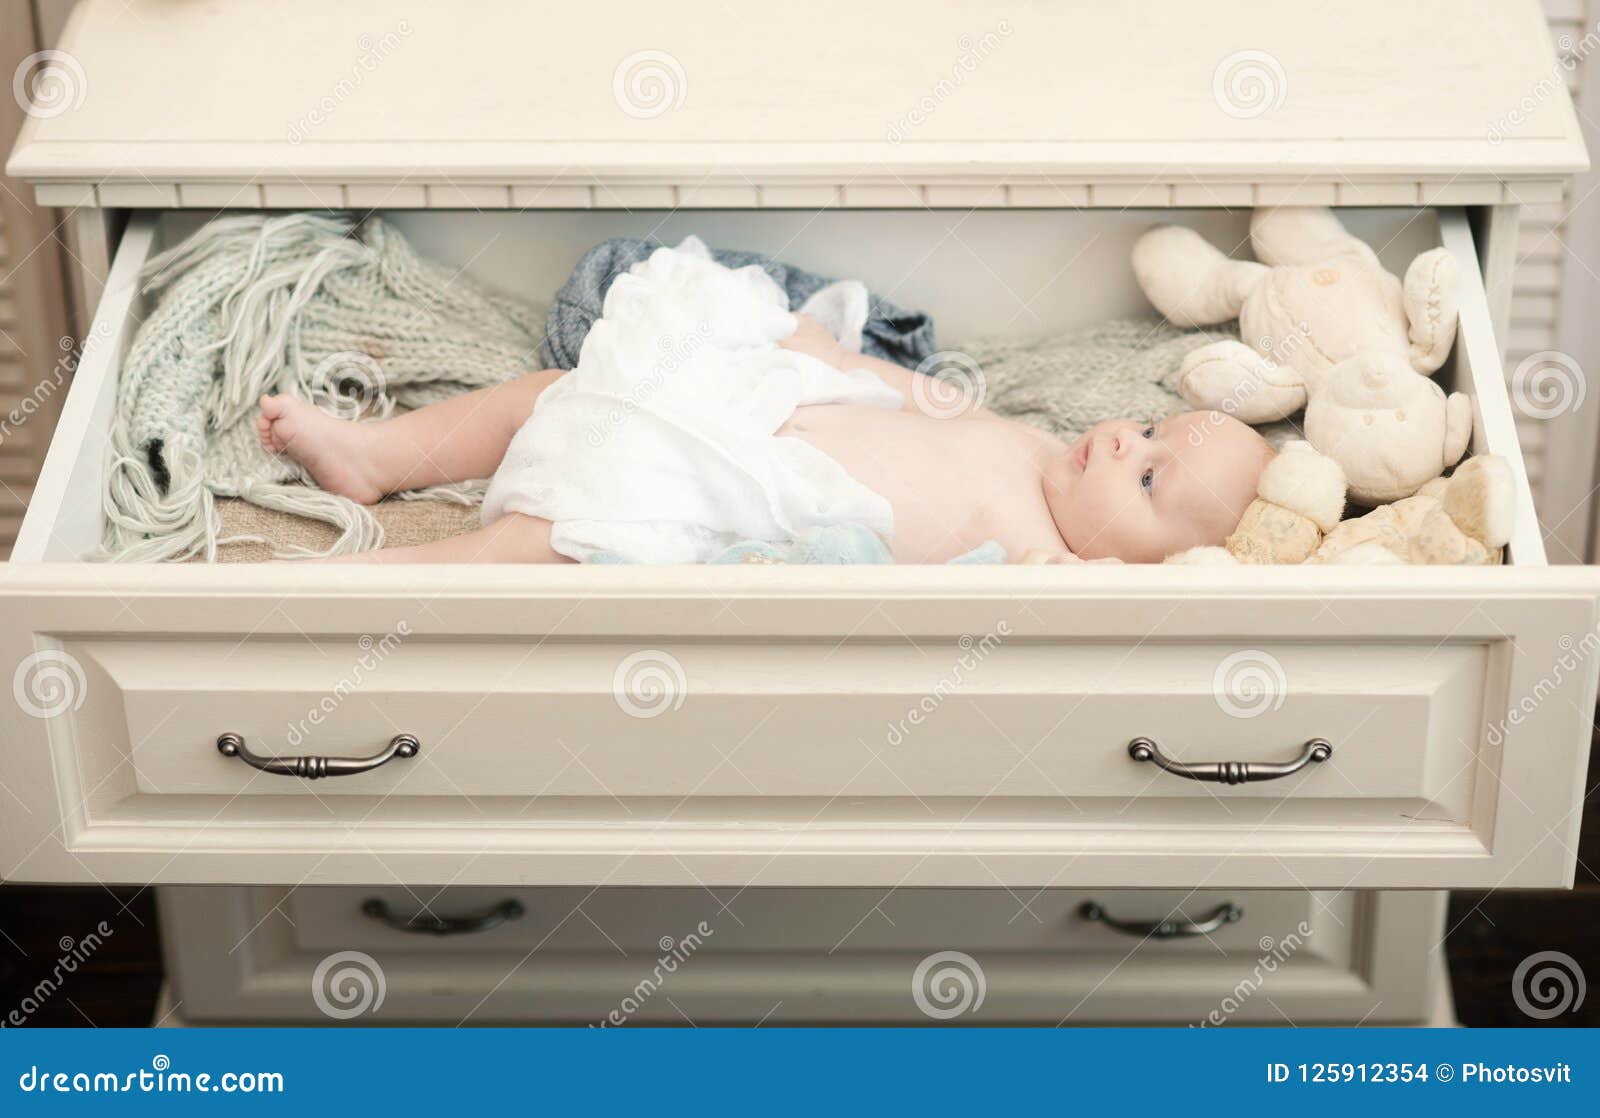 newborn baby drawers